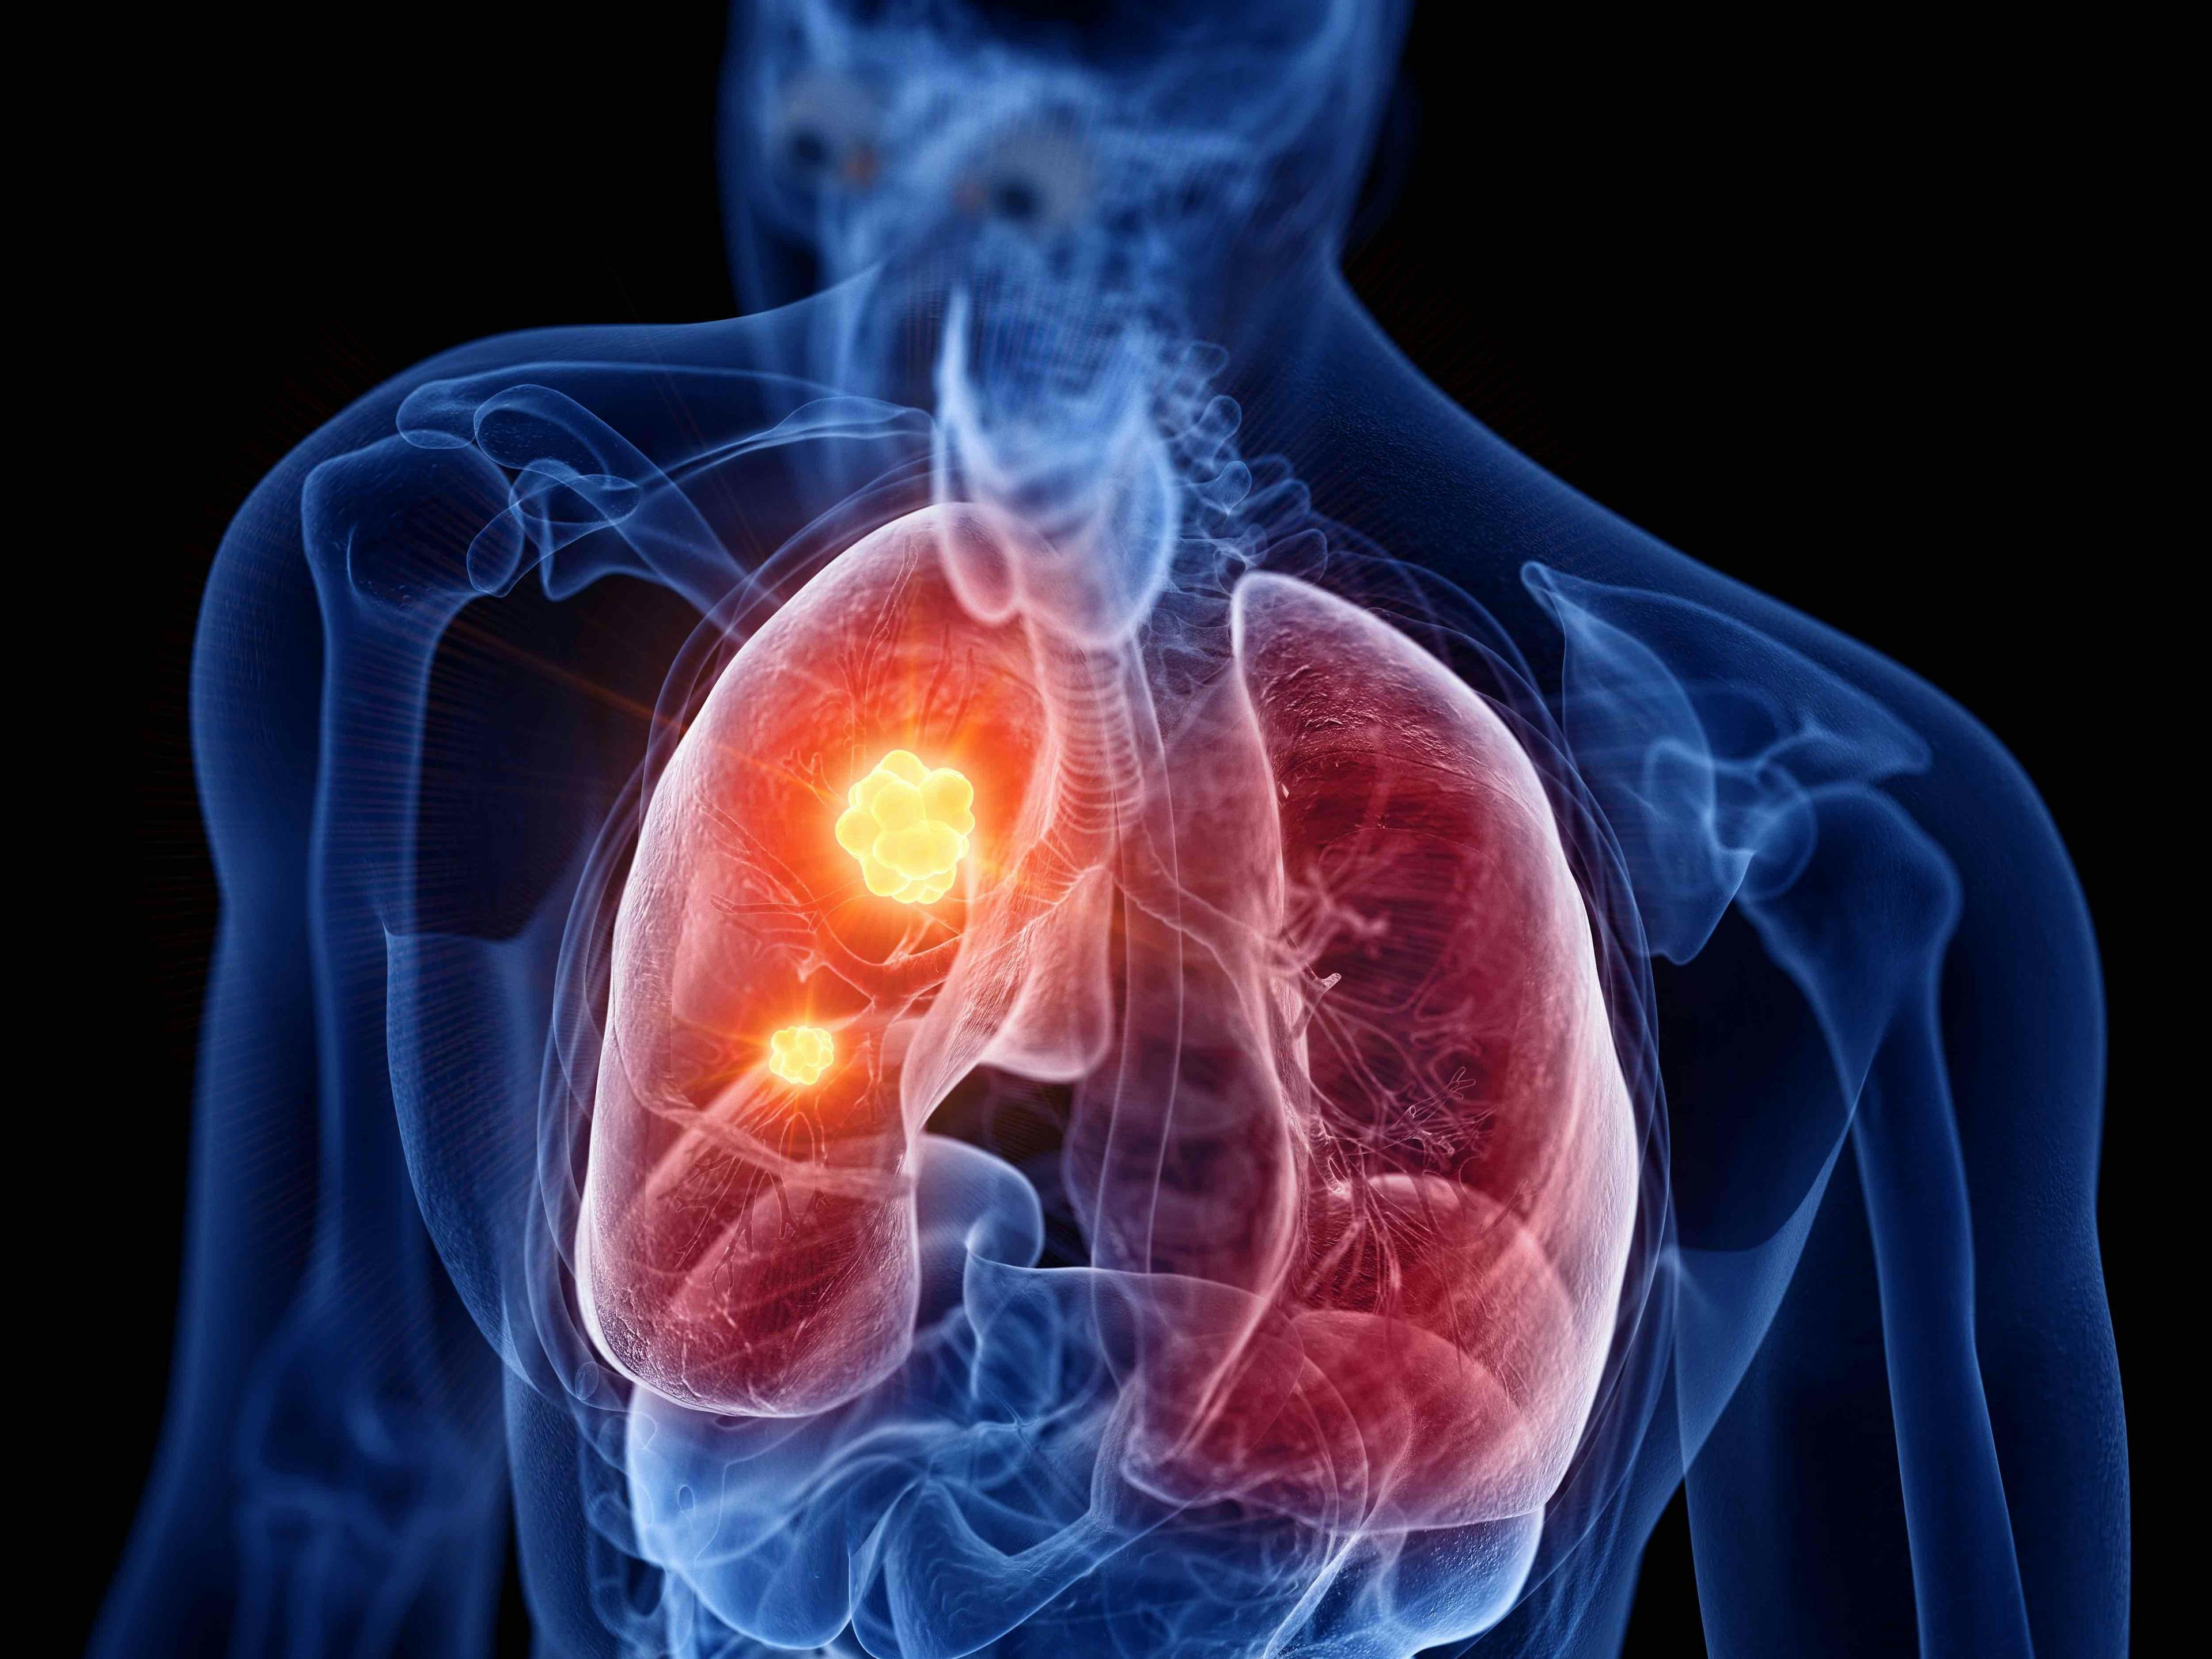 Lung cancer illustration | Image credit: SciePro - stock.adobe.com.jpg